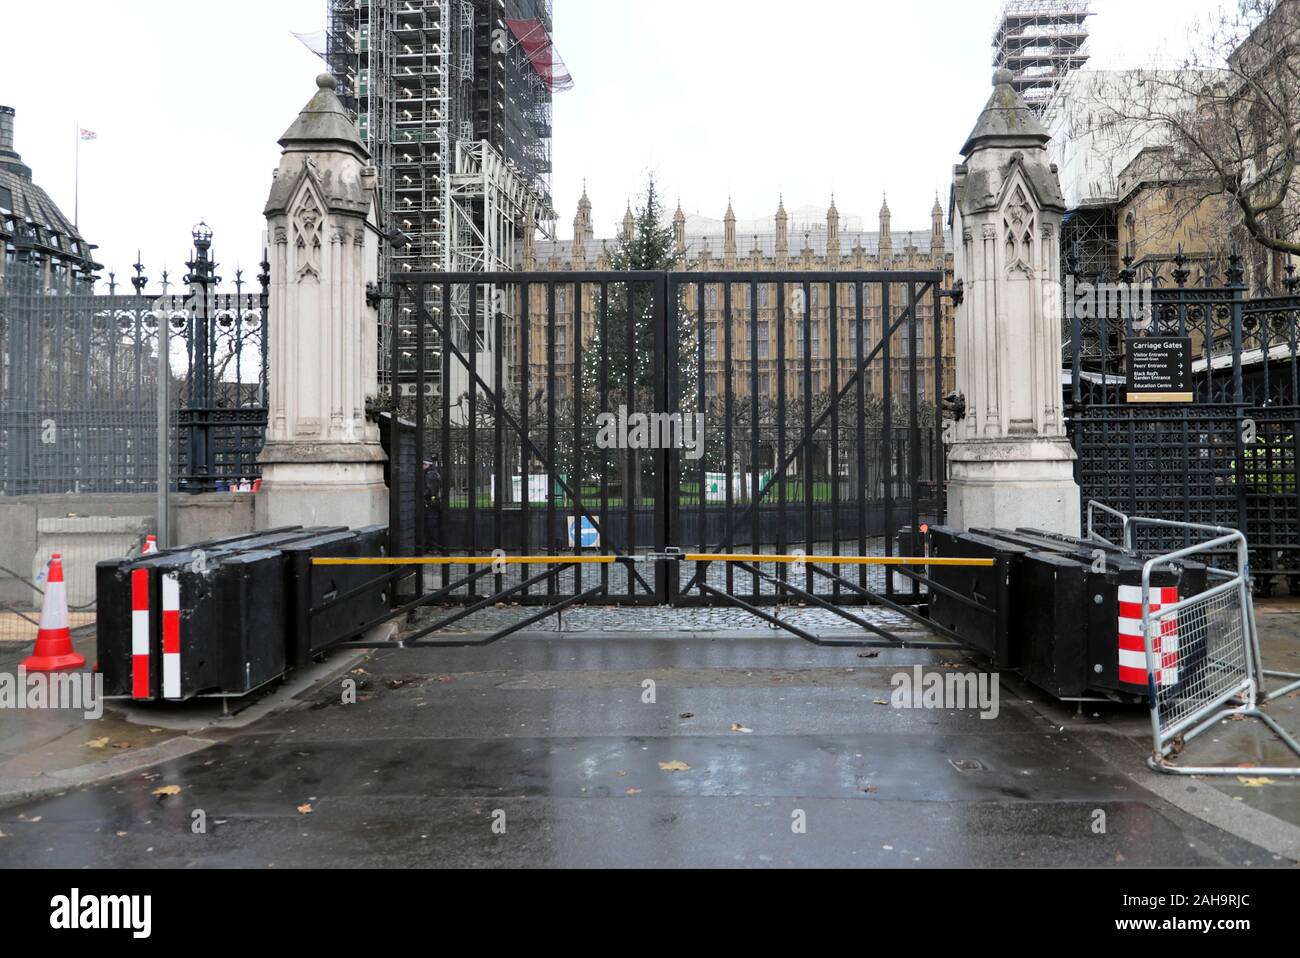 Fermé des portes de fer et les barrières anti-terroristes à l'extérieur de l'entrée des chambres du Parlement et Crhistmas tree Westminster London UK KATHY DEWITT Banque D'Images